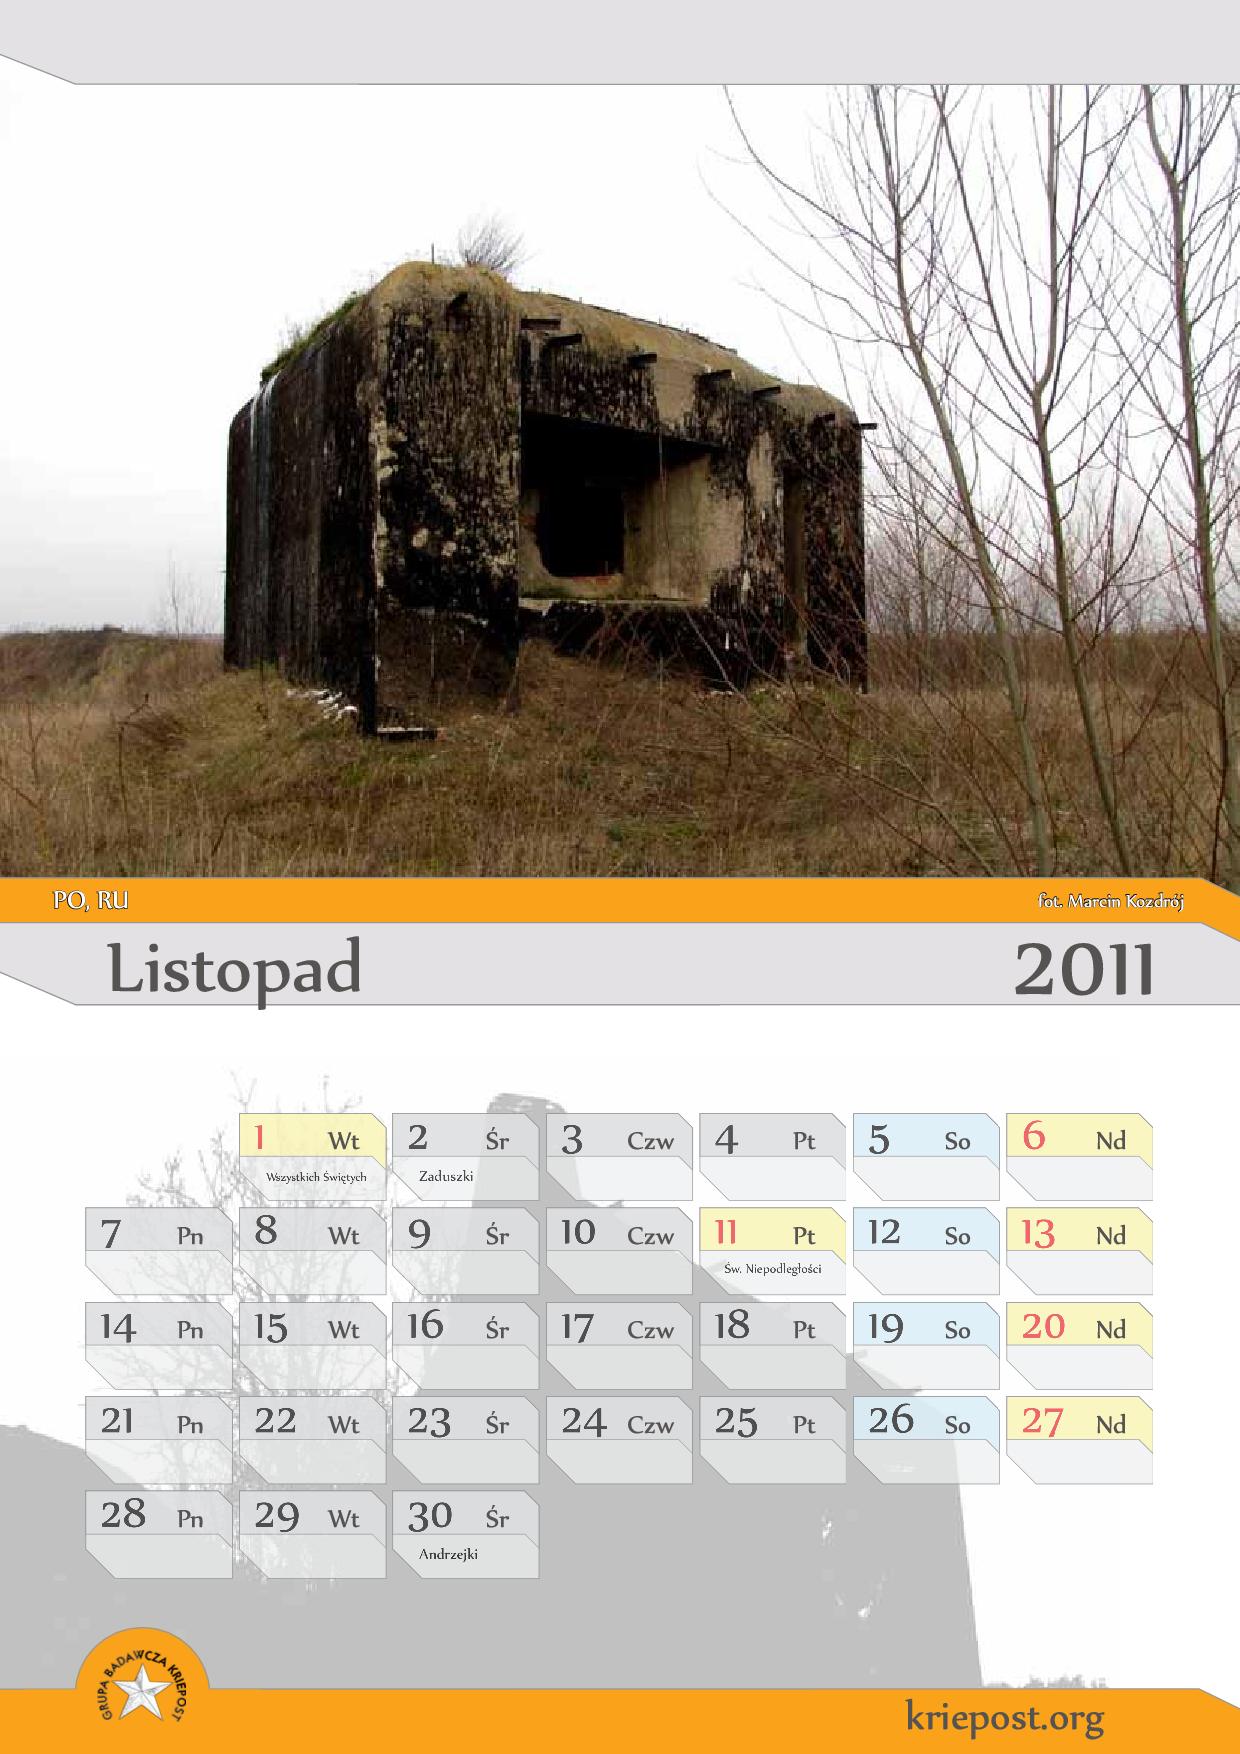 GB Kriepost kalendarz 2011 listopad